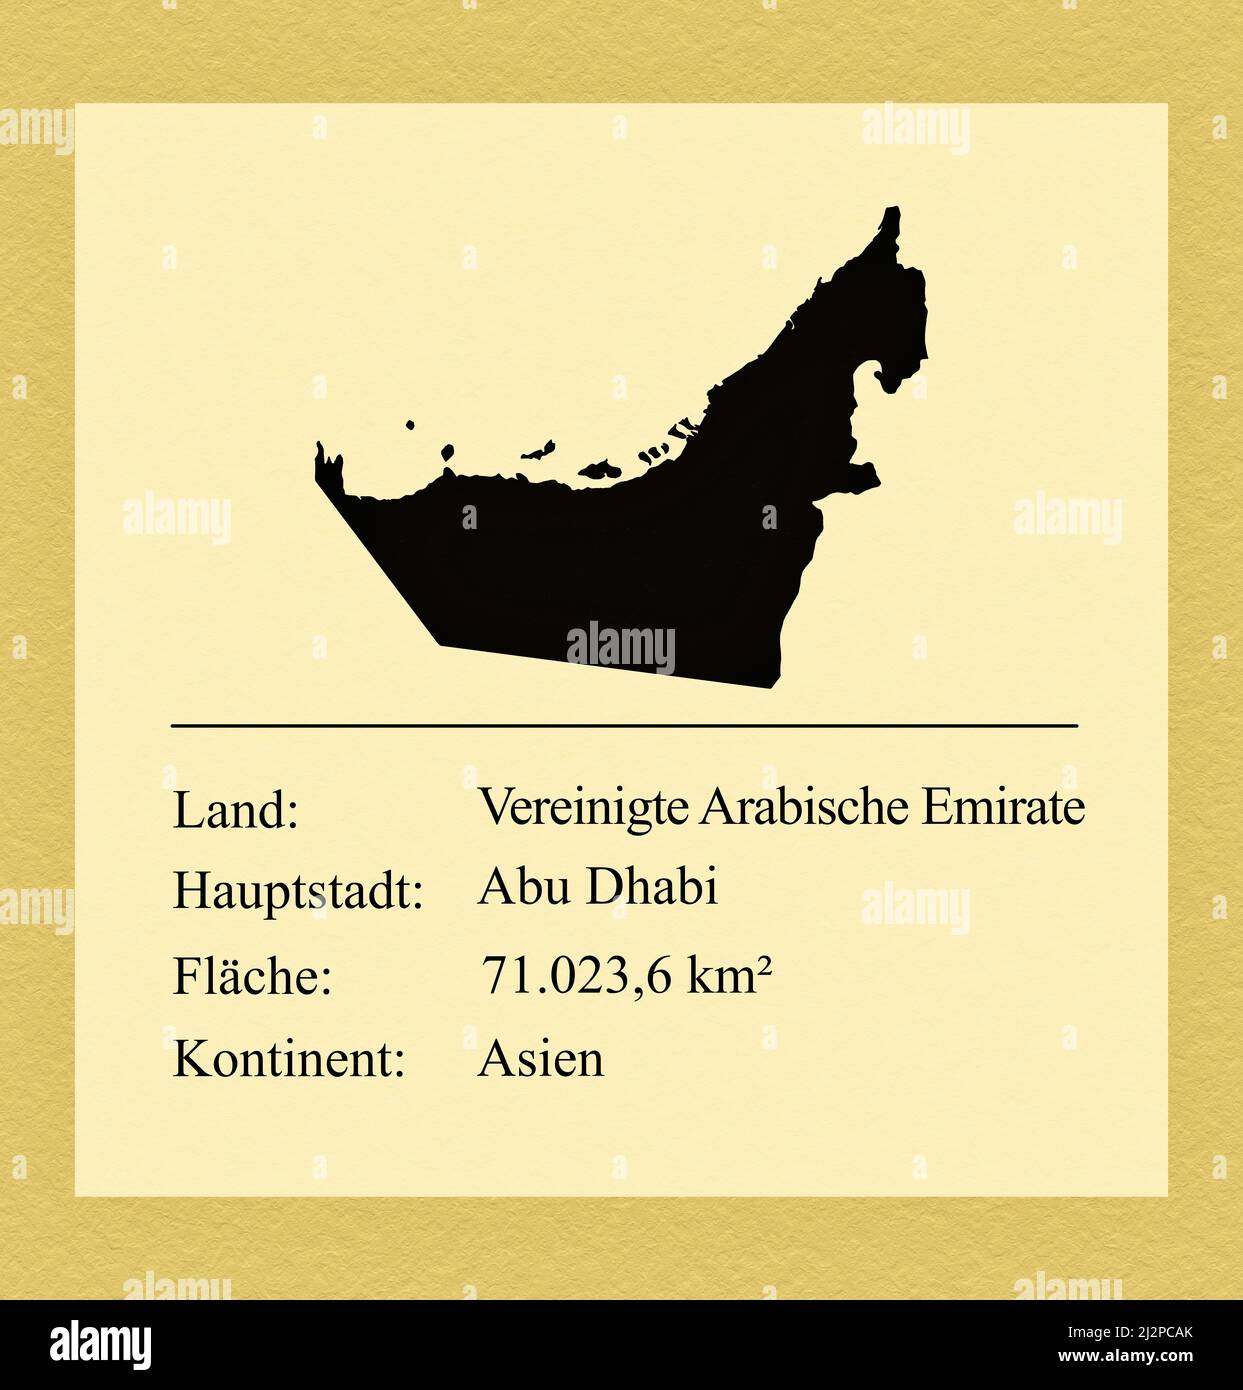 Umrisse der Vereinigten Arabischen Emirato, darunter ein kleiner Steckbrief mit Ländernamen, Hauptstadt, Fläche und Kontinent Foto Stock